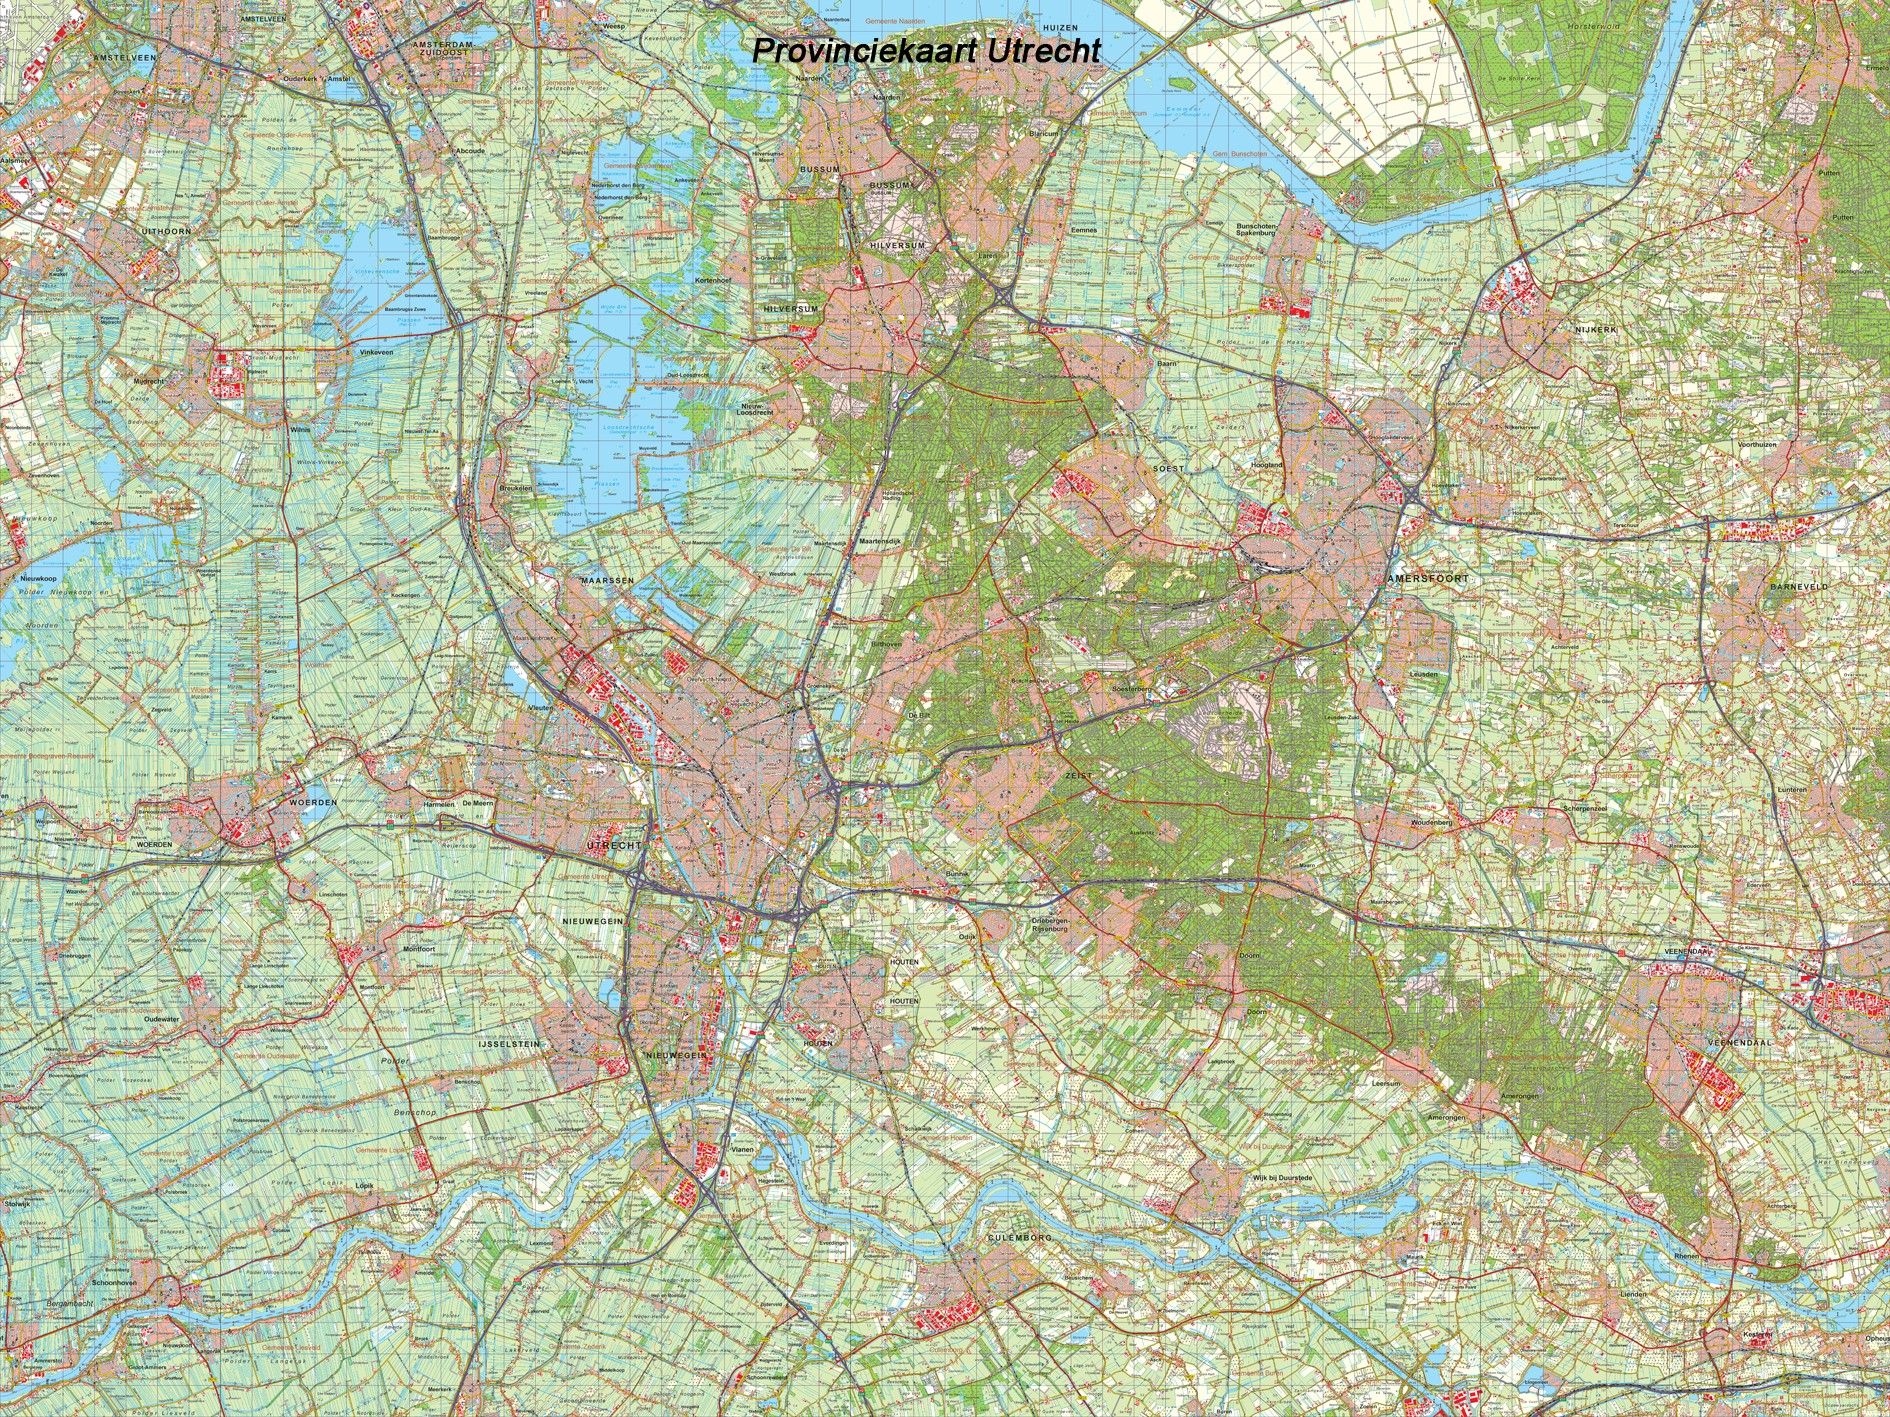 synoniemenlijst vriendelijke groet Mount Bank Koop Provincie kaart Utrecht schaal 1:50.000 voordelig online bij COMMEE